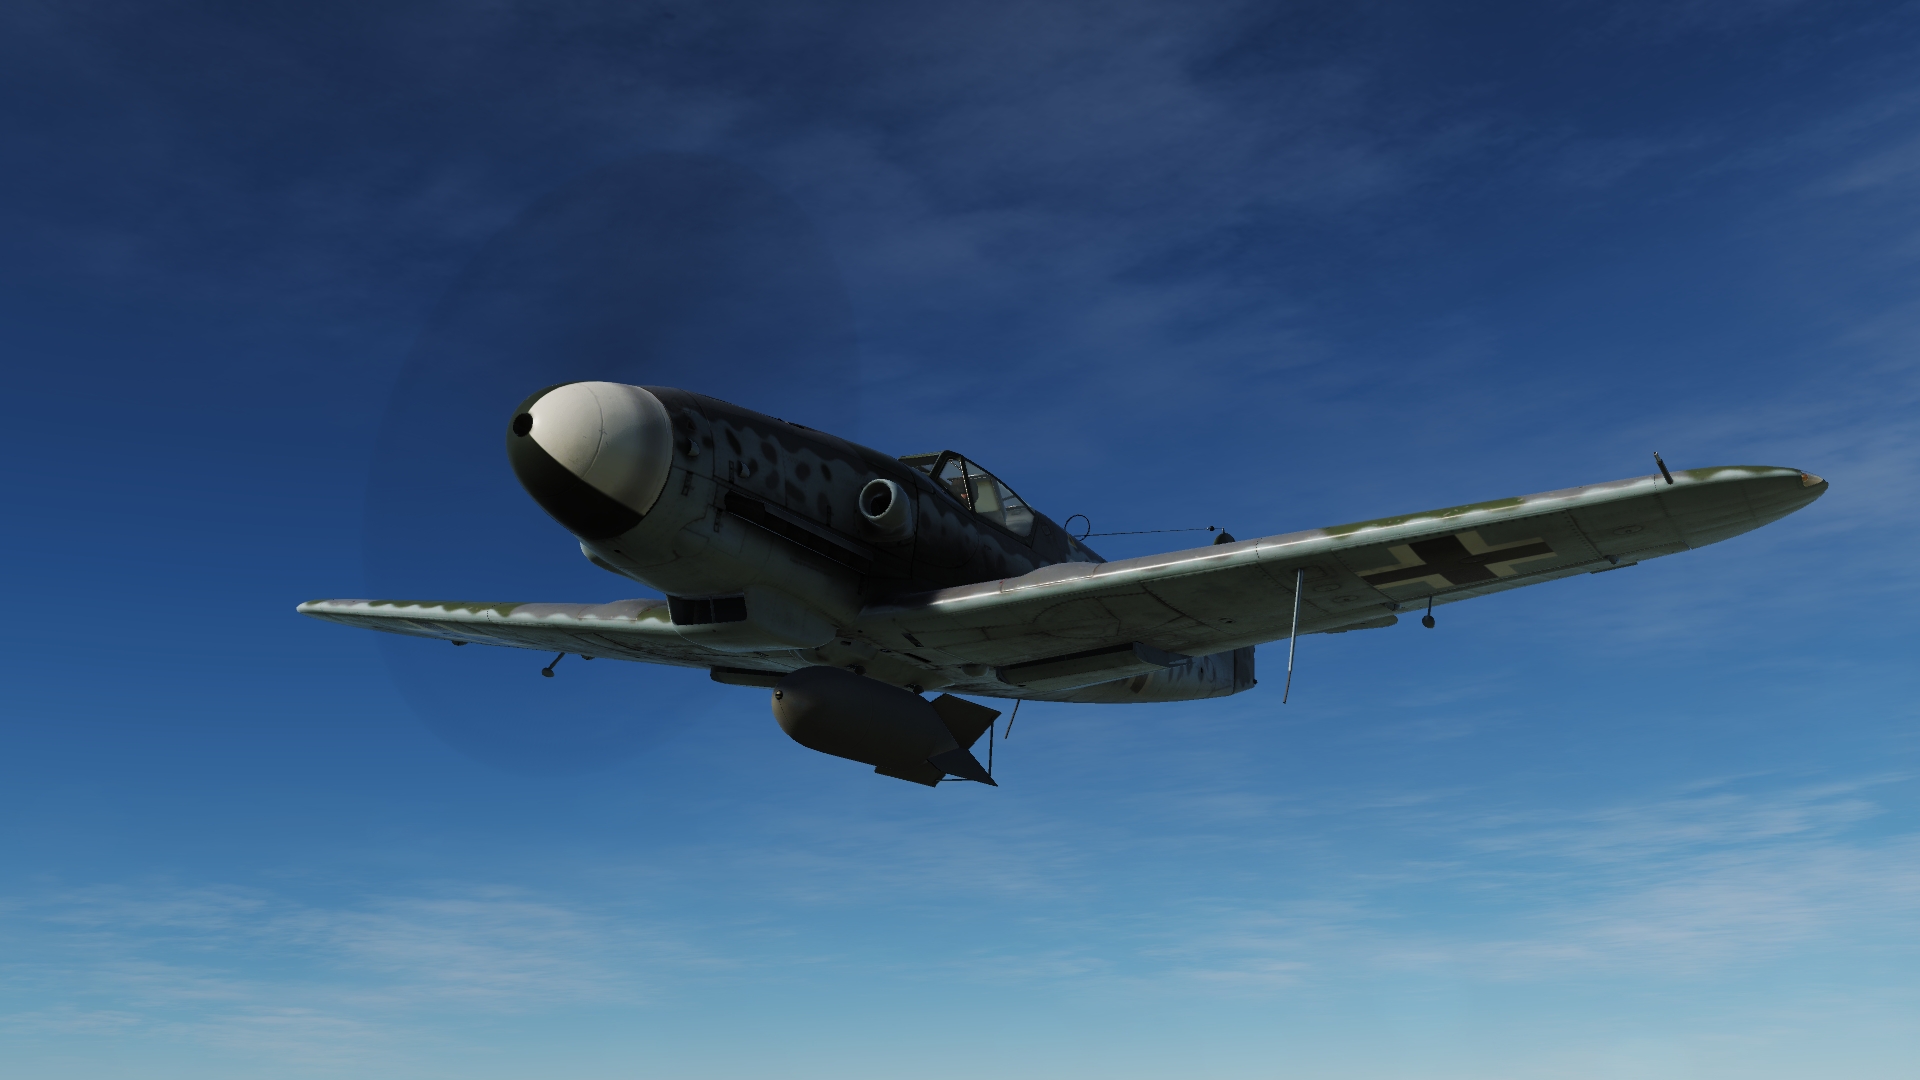 Digital Combat Simulator Dcs World Bf109 Messerschmitt Aircraft Airplane Video Games 1920x1080